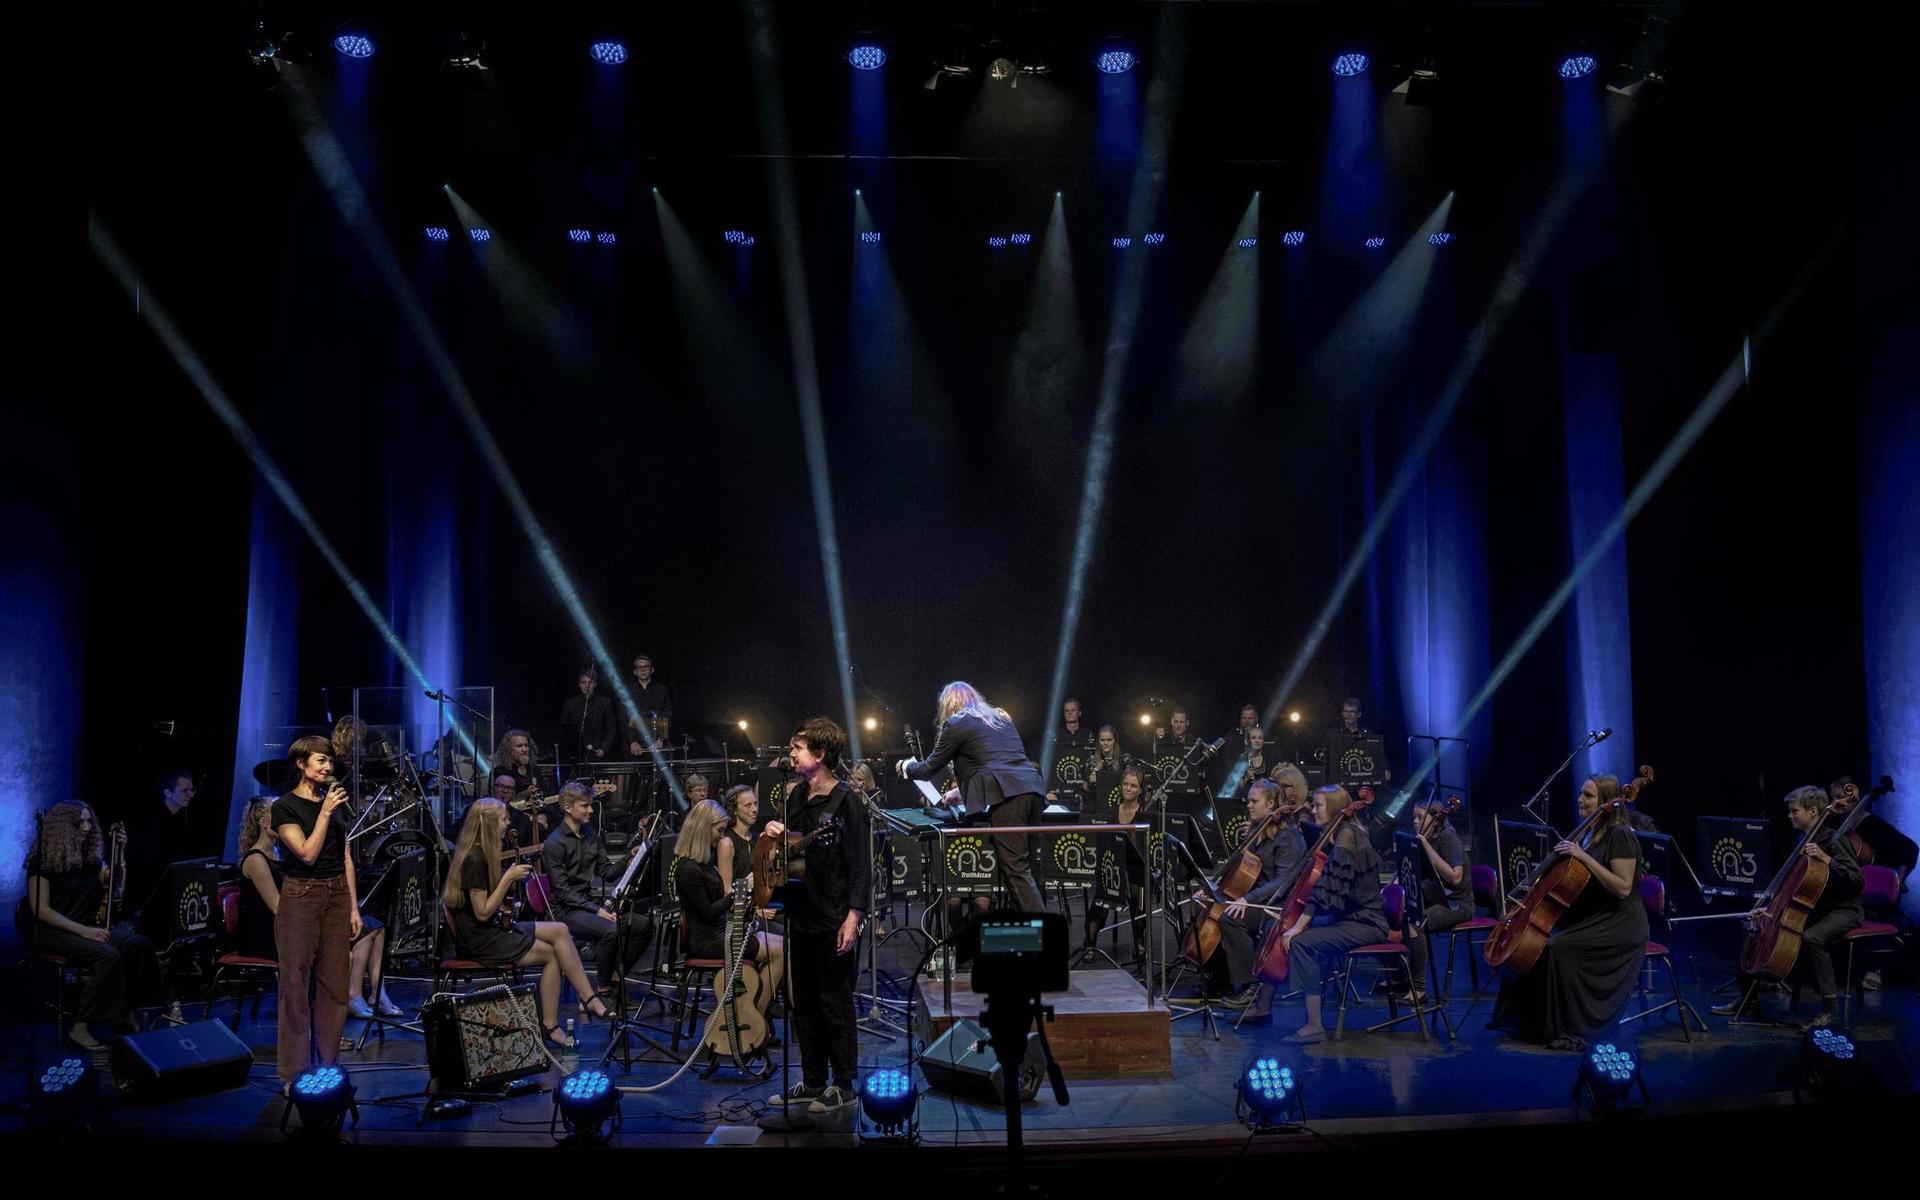 Förra sommaren livestremades en konsert med N3 symfoniorkester och Timo Räisinen från Hebeteatern i Trollhättan. 